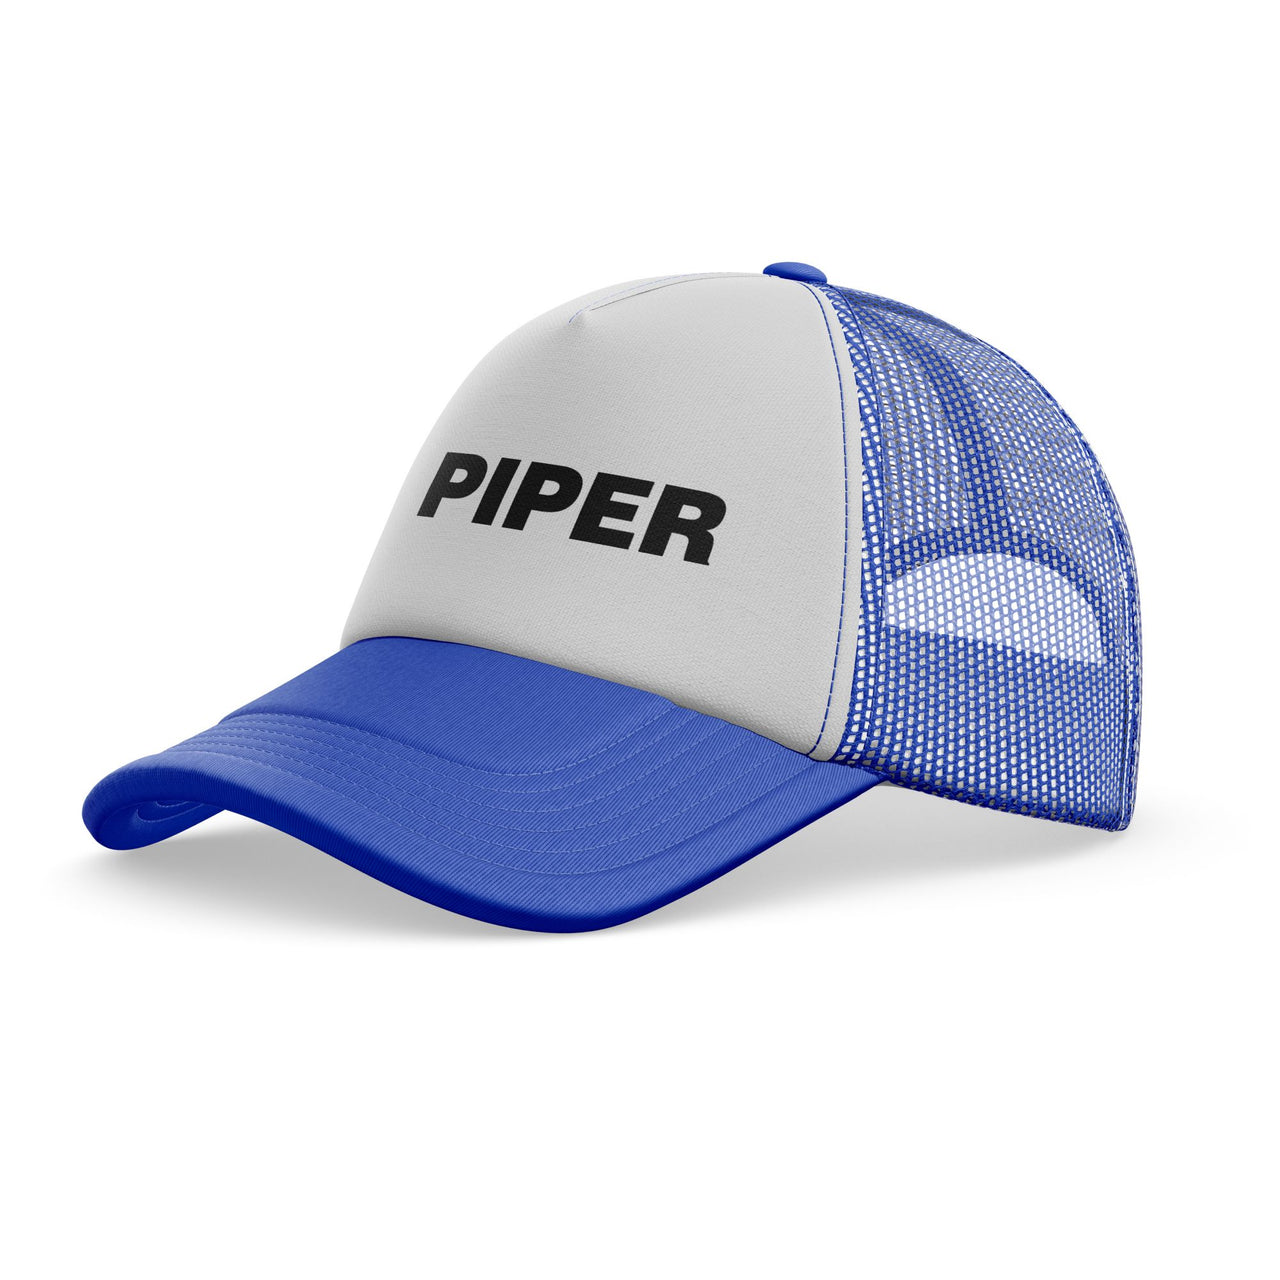 Piper & Text Designed Trucker Caps & Hats